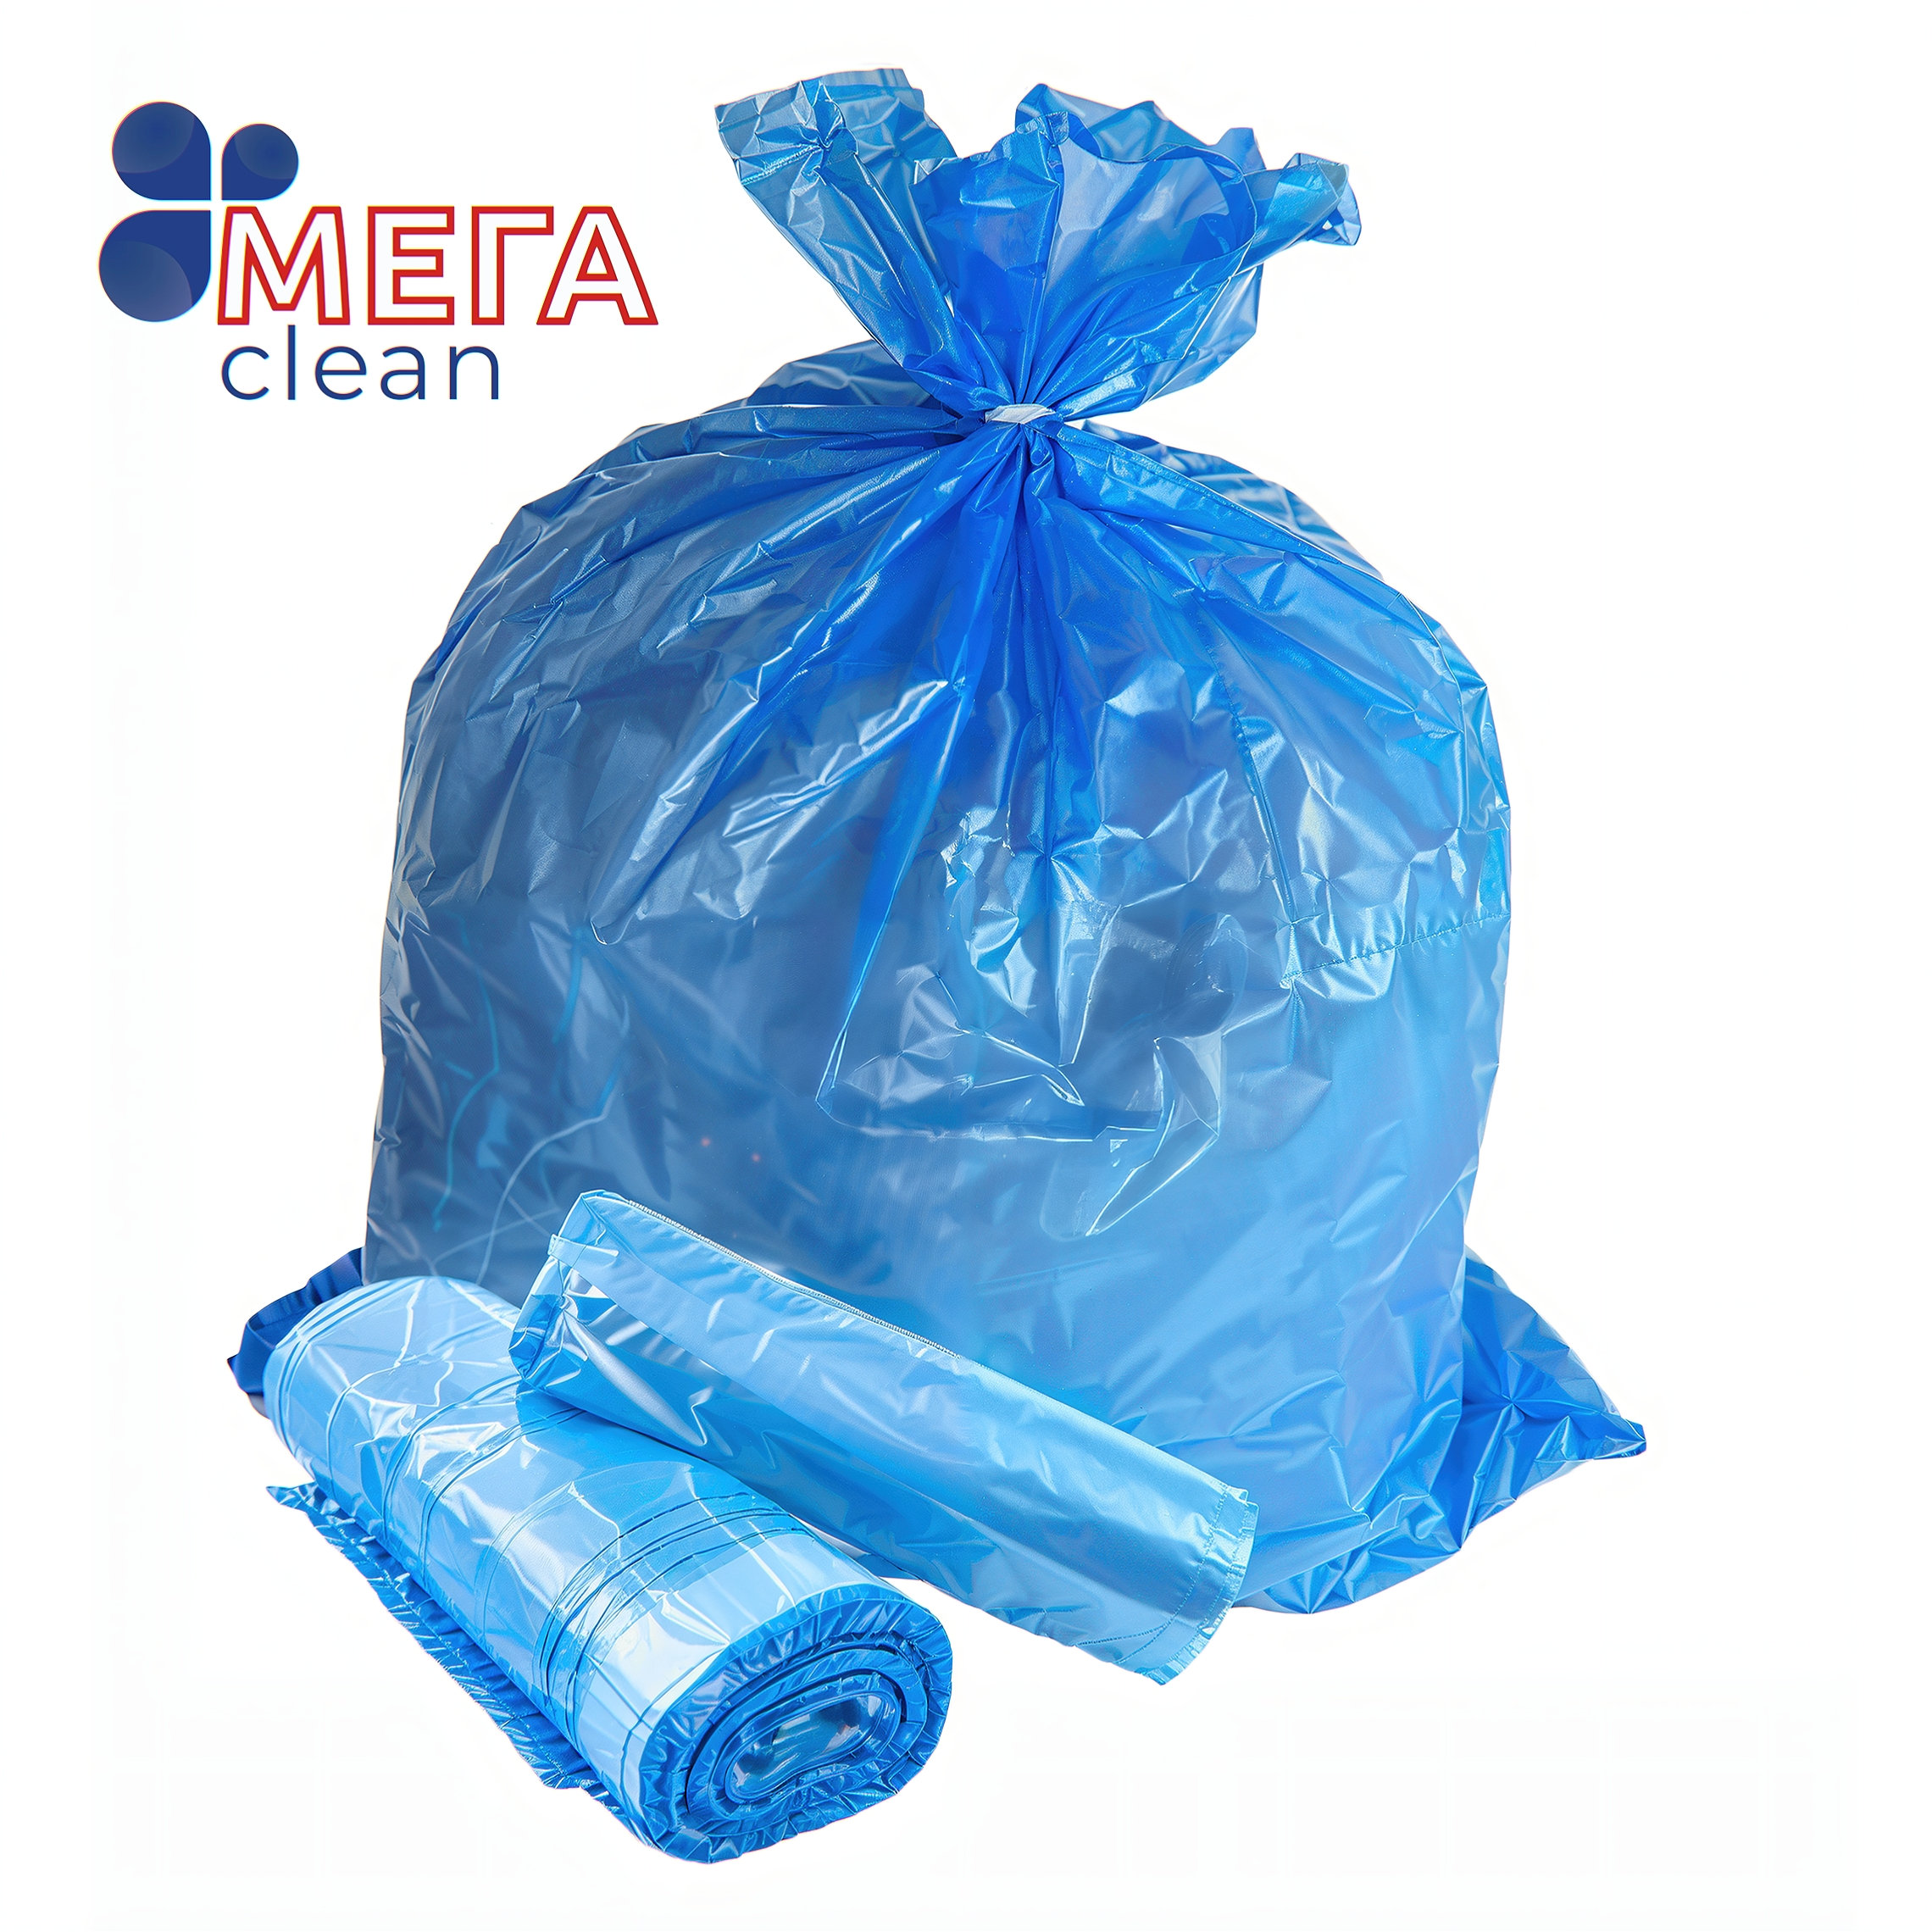 Купить Пакет мусорный 60 л, ТМ «МЕГА CLEAN» оптом, в наличии и на заказ